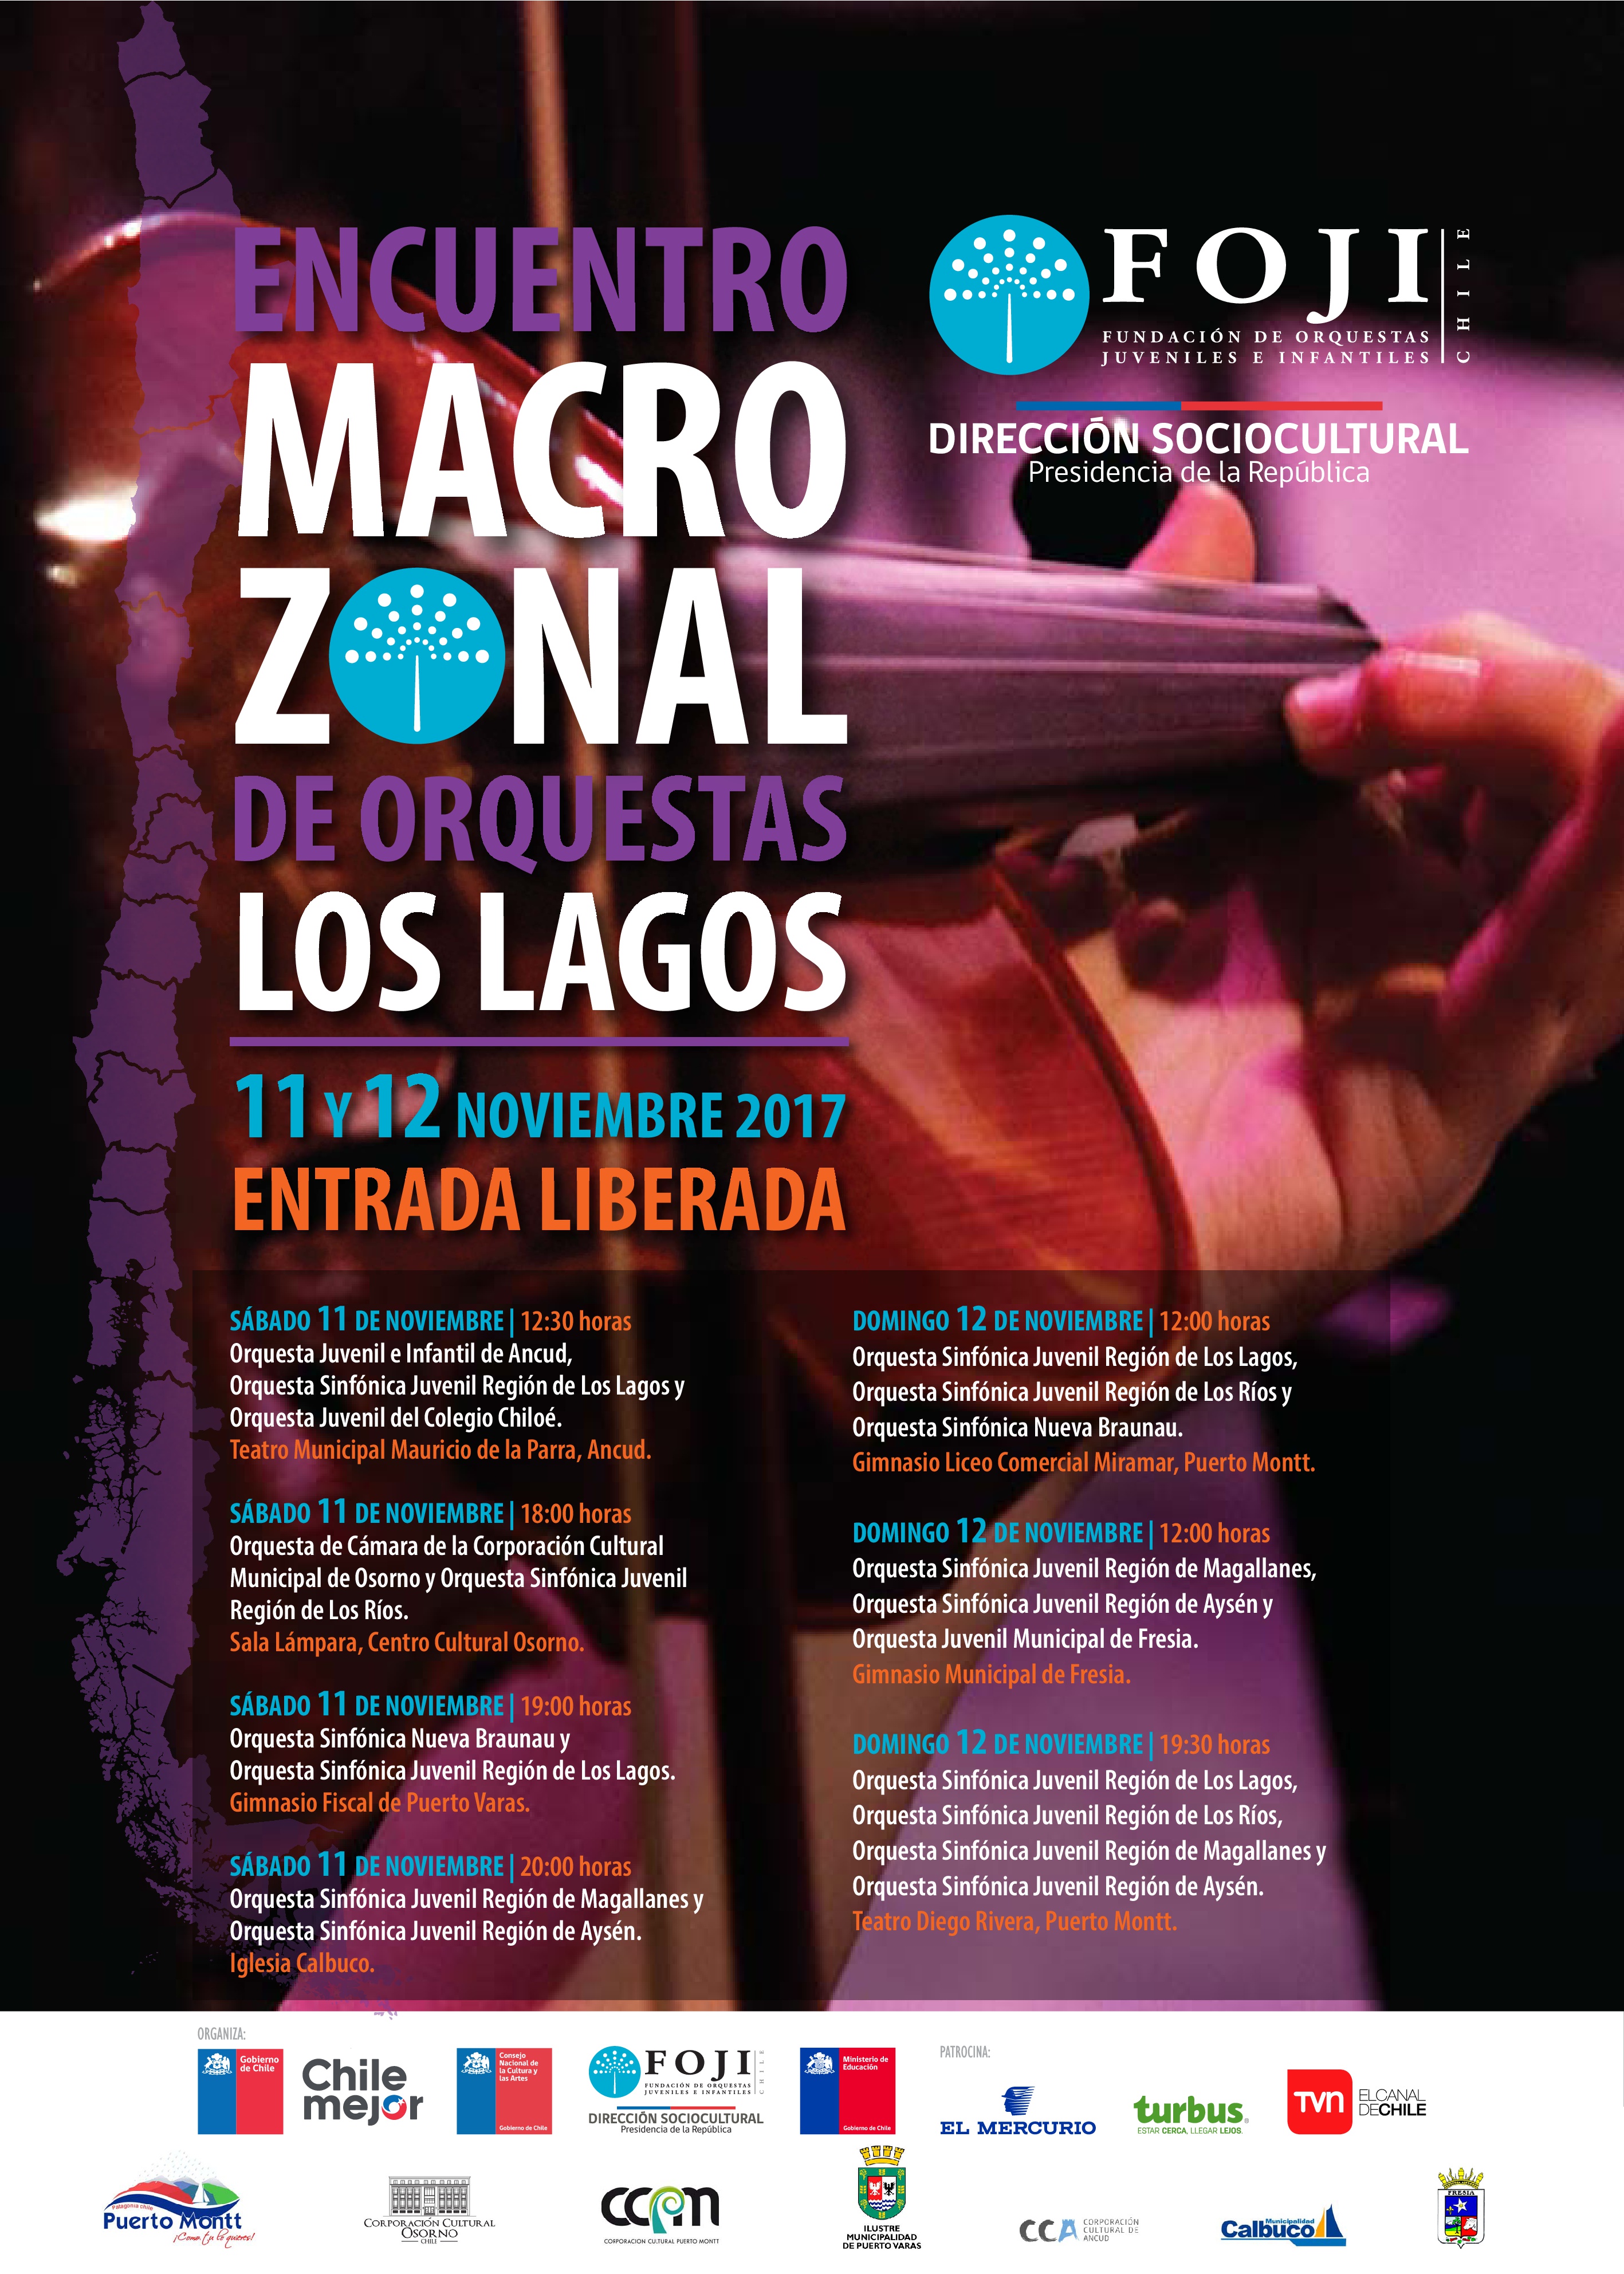 ¡Asiste al Encuentro Macrozonal de Orquestas – Los Lagos 2017!